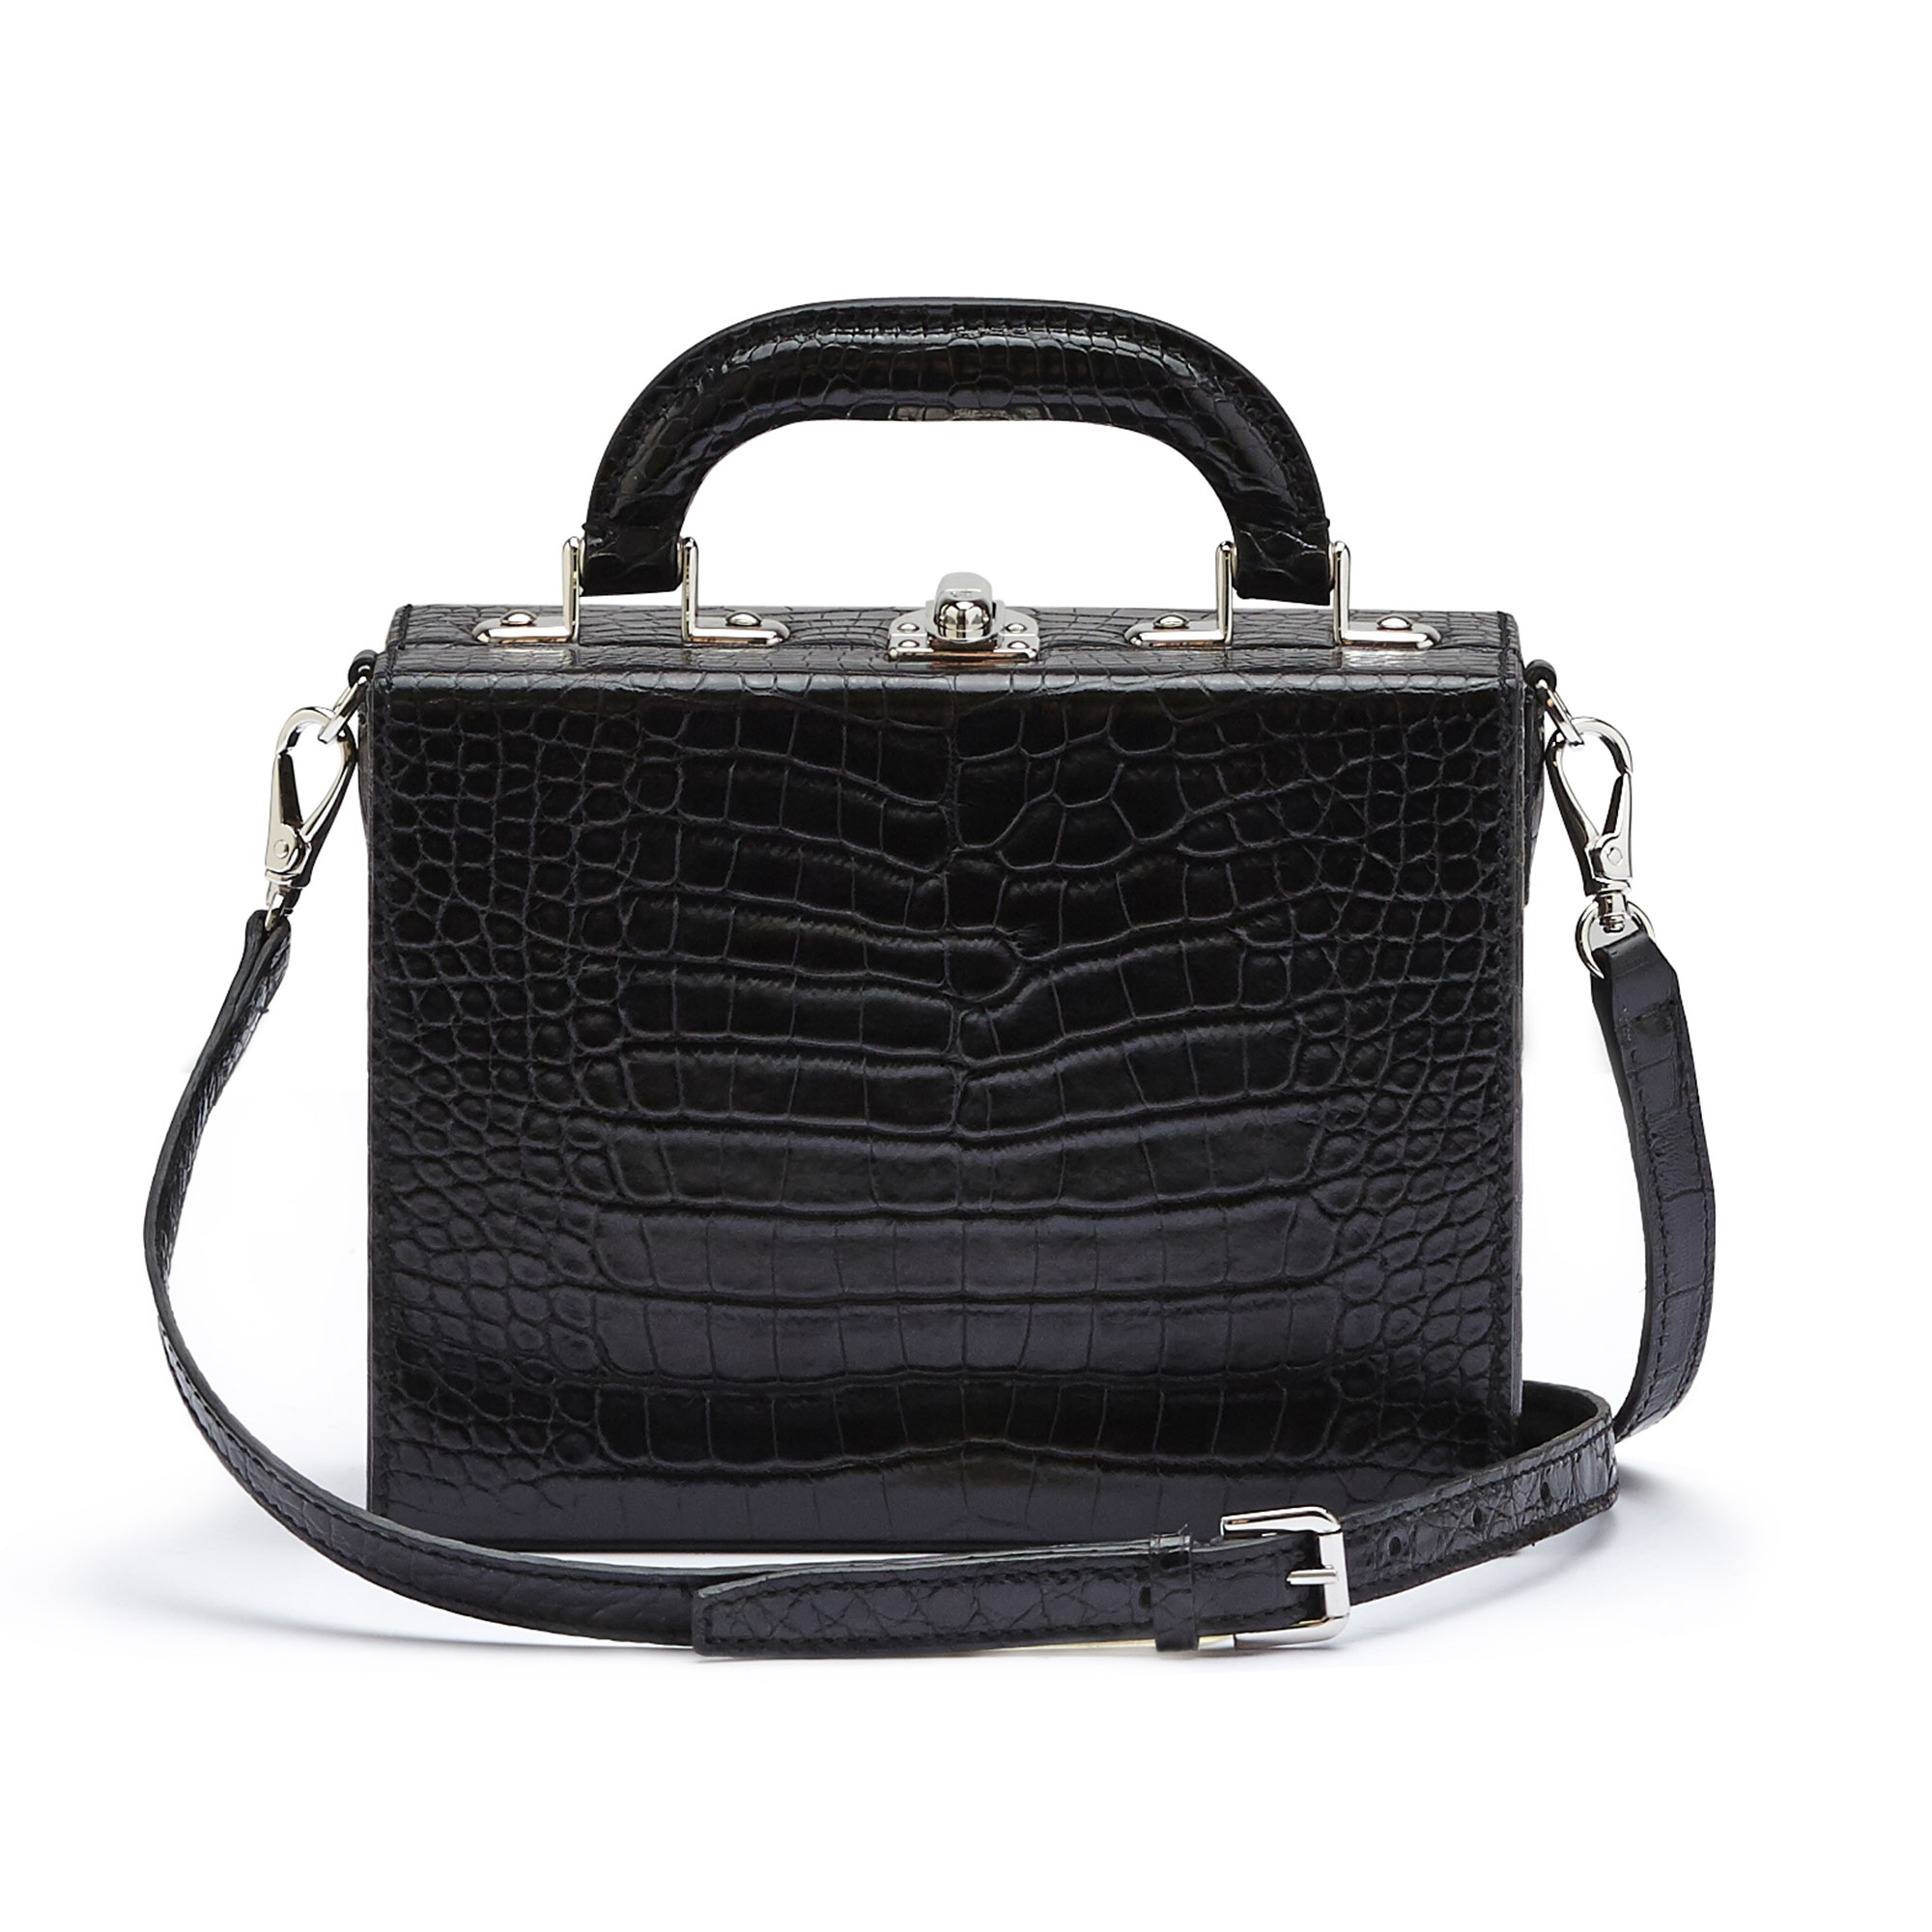 The black alligator Mini Squared Bertoncina bag by Bertoni 1949 03